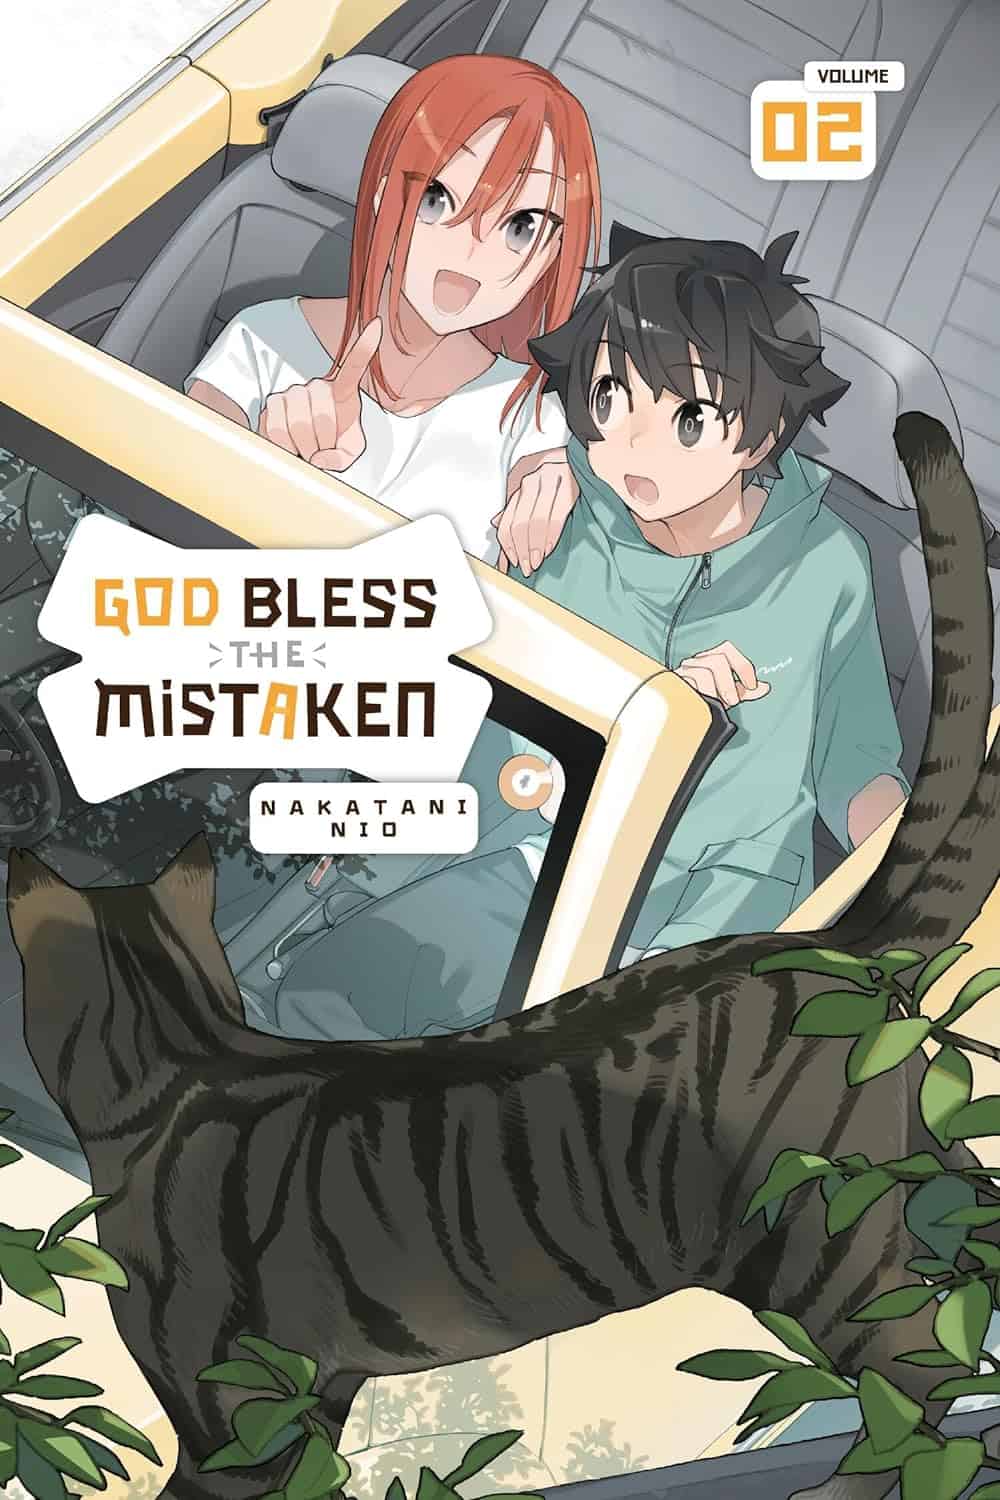 God Bless the Mistaken Vol 2 cover art